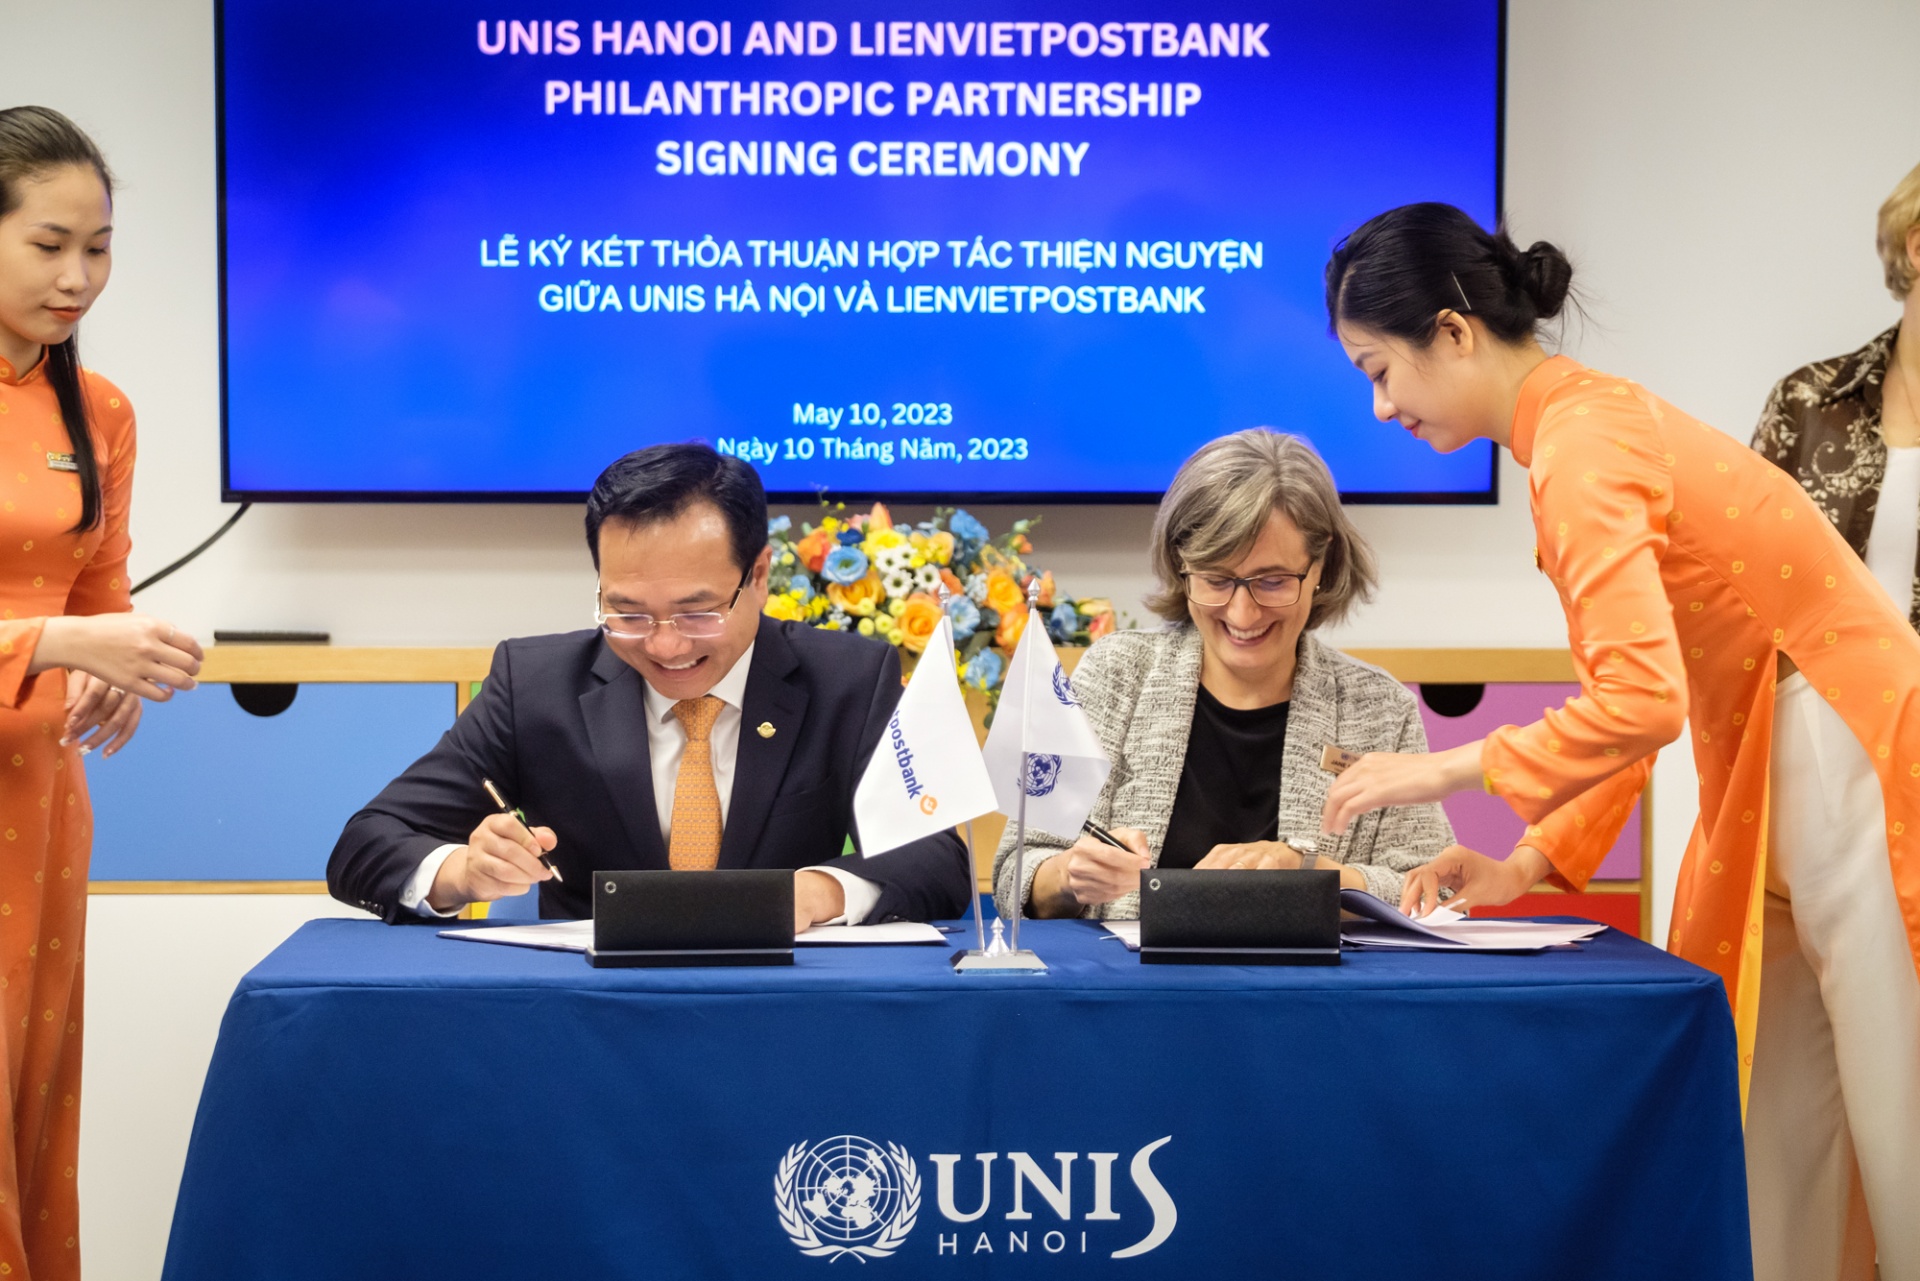 Lienvietpostbank contributes $2million to UNIS Hanoi educational programmes